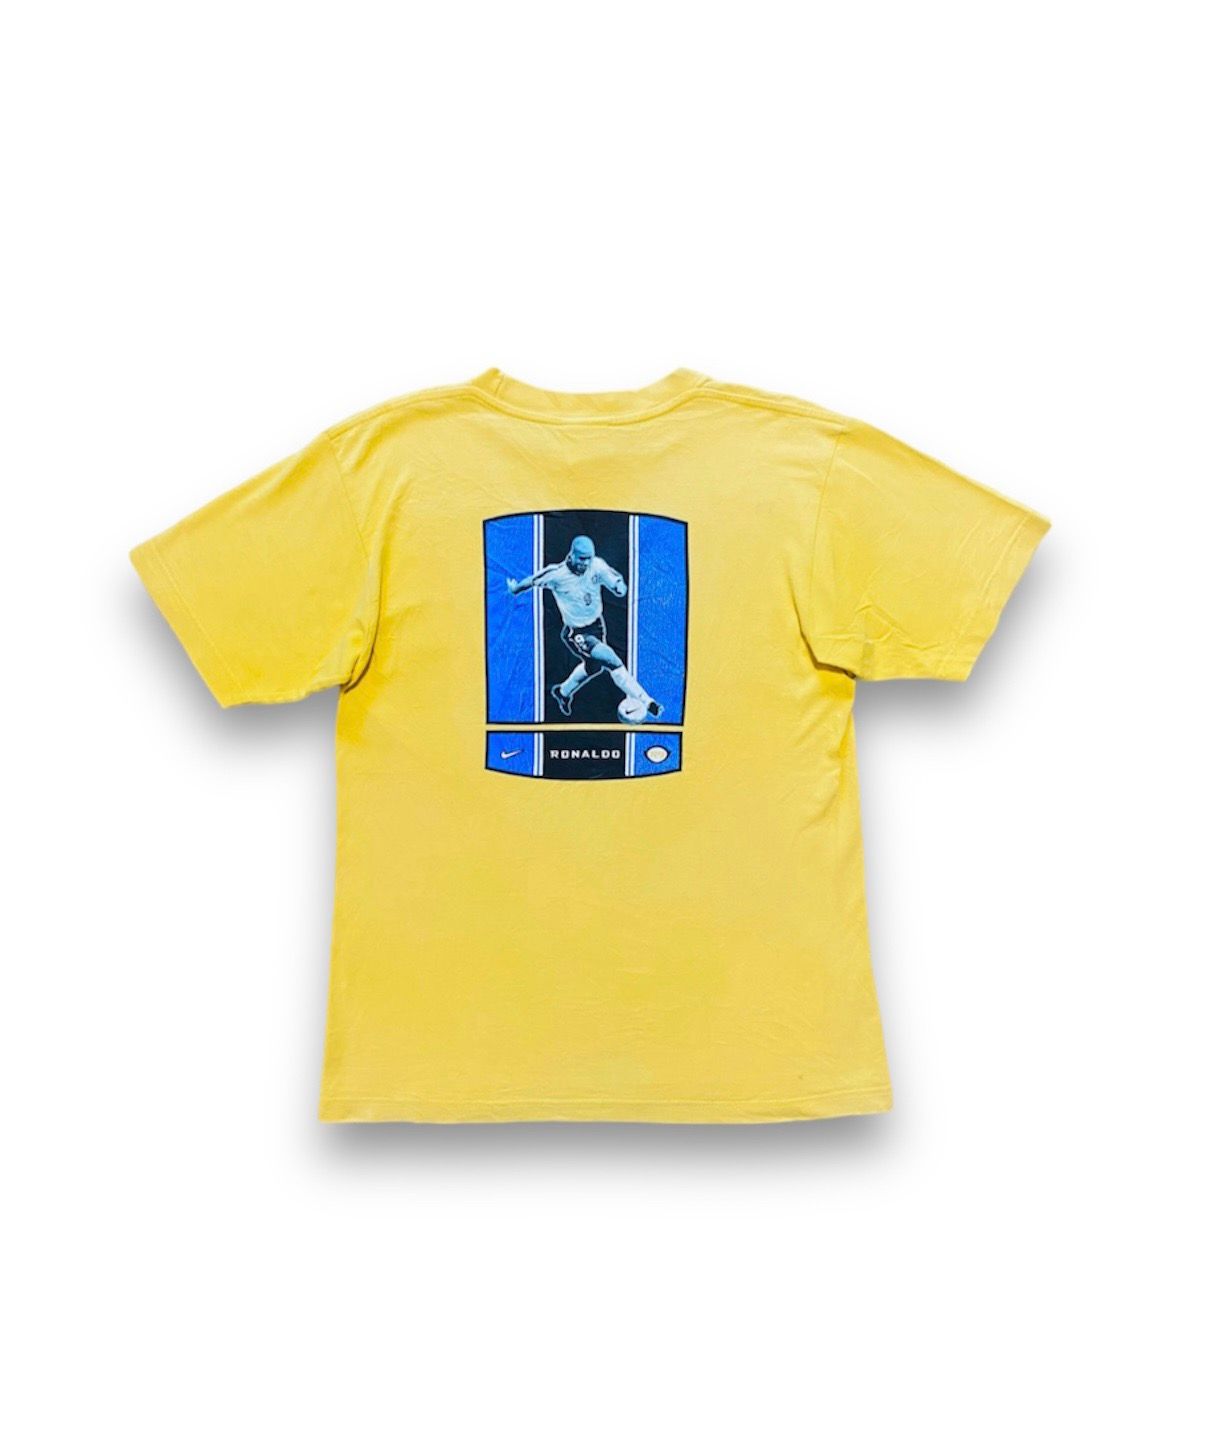 Vintage Nike Ronaldo R9 T-Shirt Football Soccer Yellow - 1